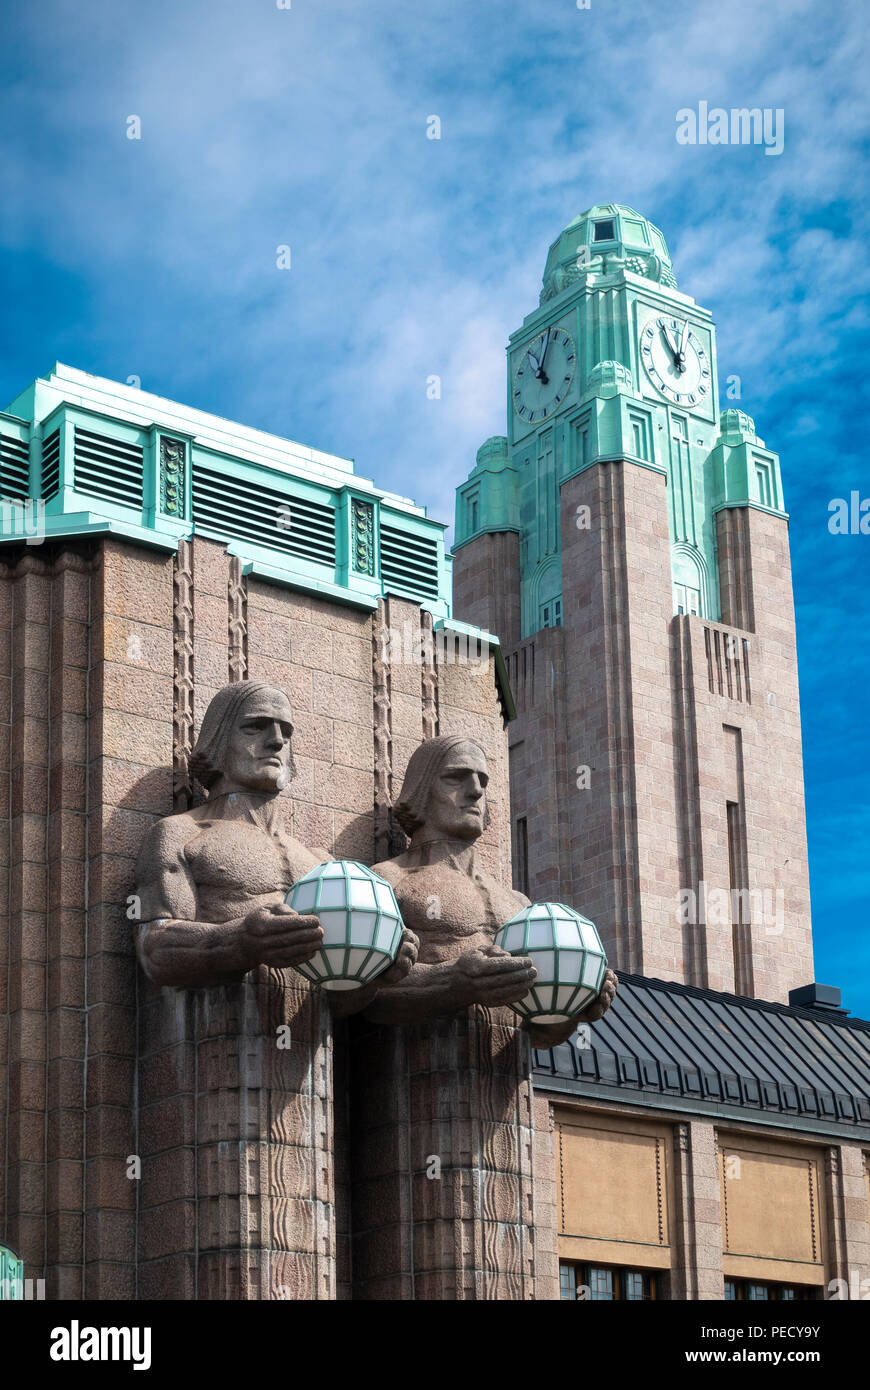 La gare centrale de Helsinki avec deux hommes de pierre statues holding lampes et la gare la tour de l'horloge. Banque D'Images